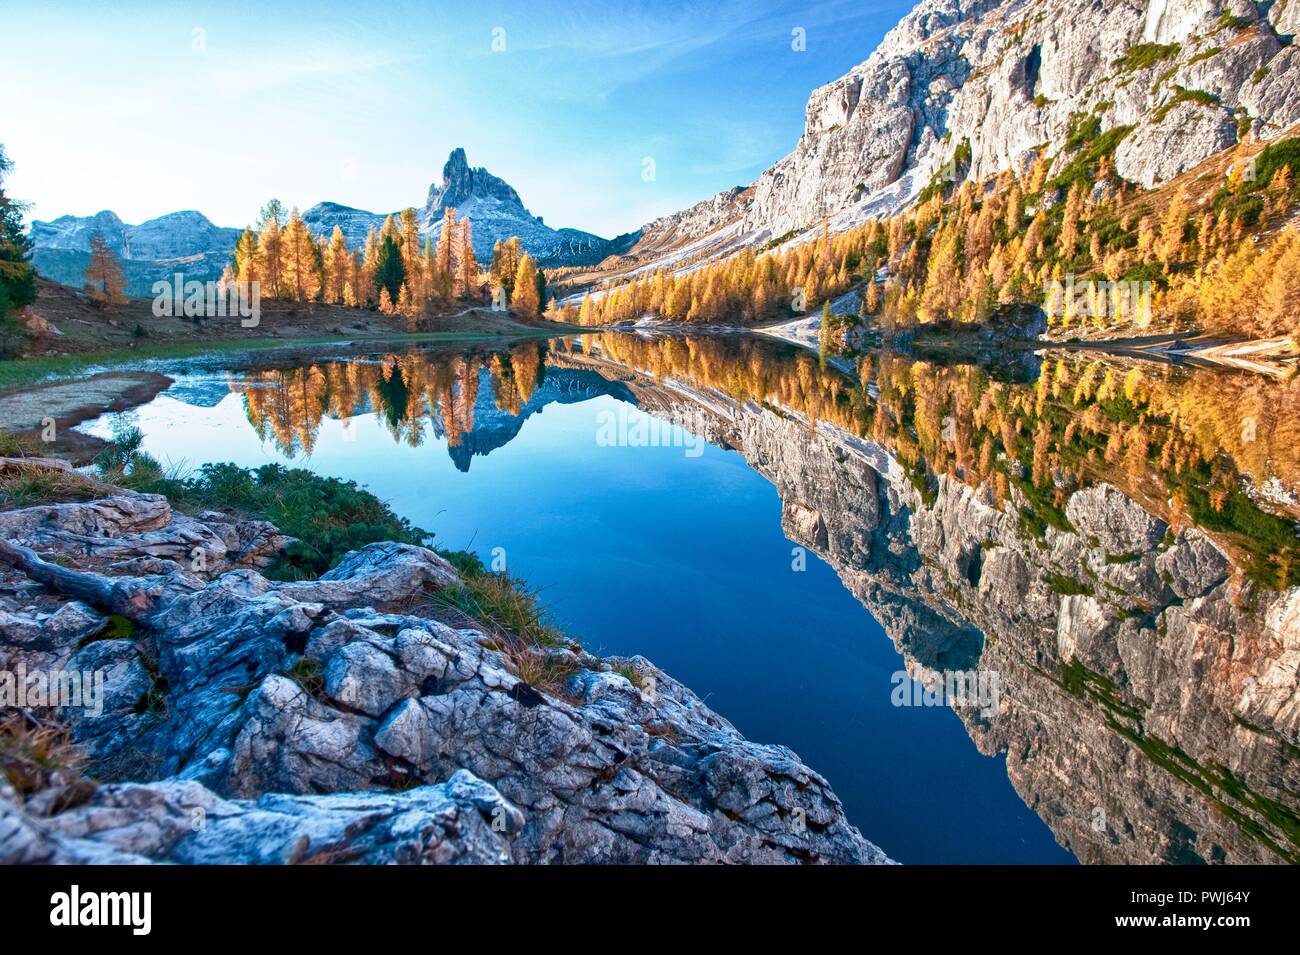 Reflection of the Becco di Mezzodi in Lake Federa, Dolomites of Belluno, Trentino Alto Adige, Italy Stock Photo